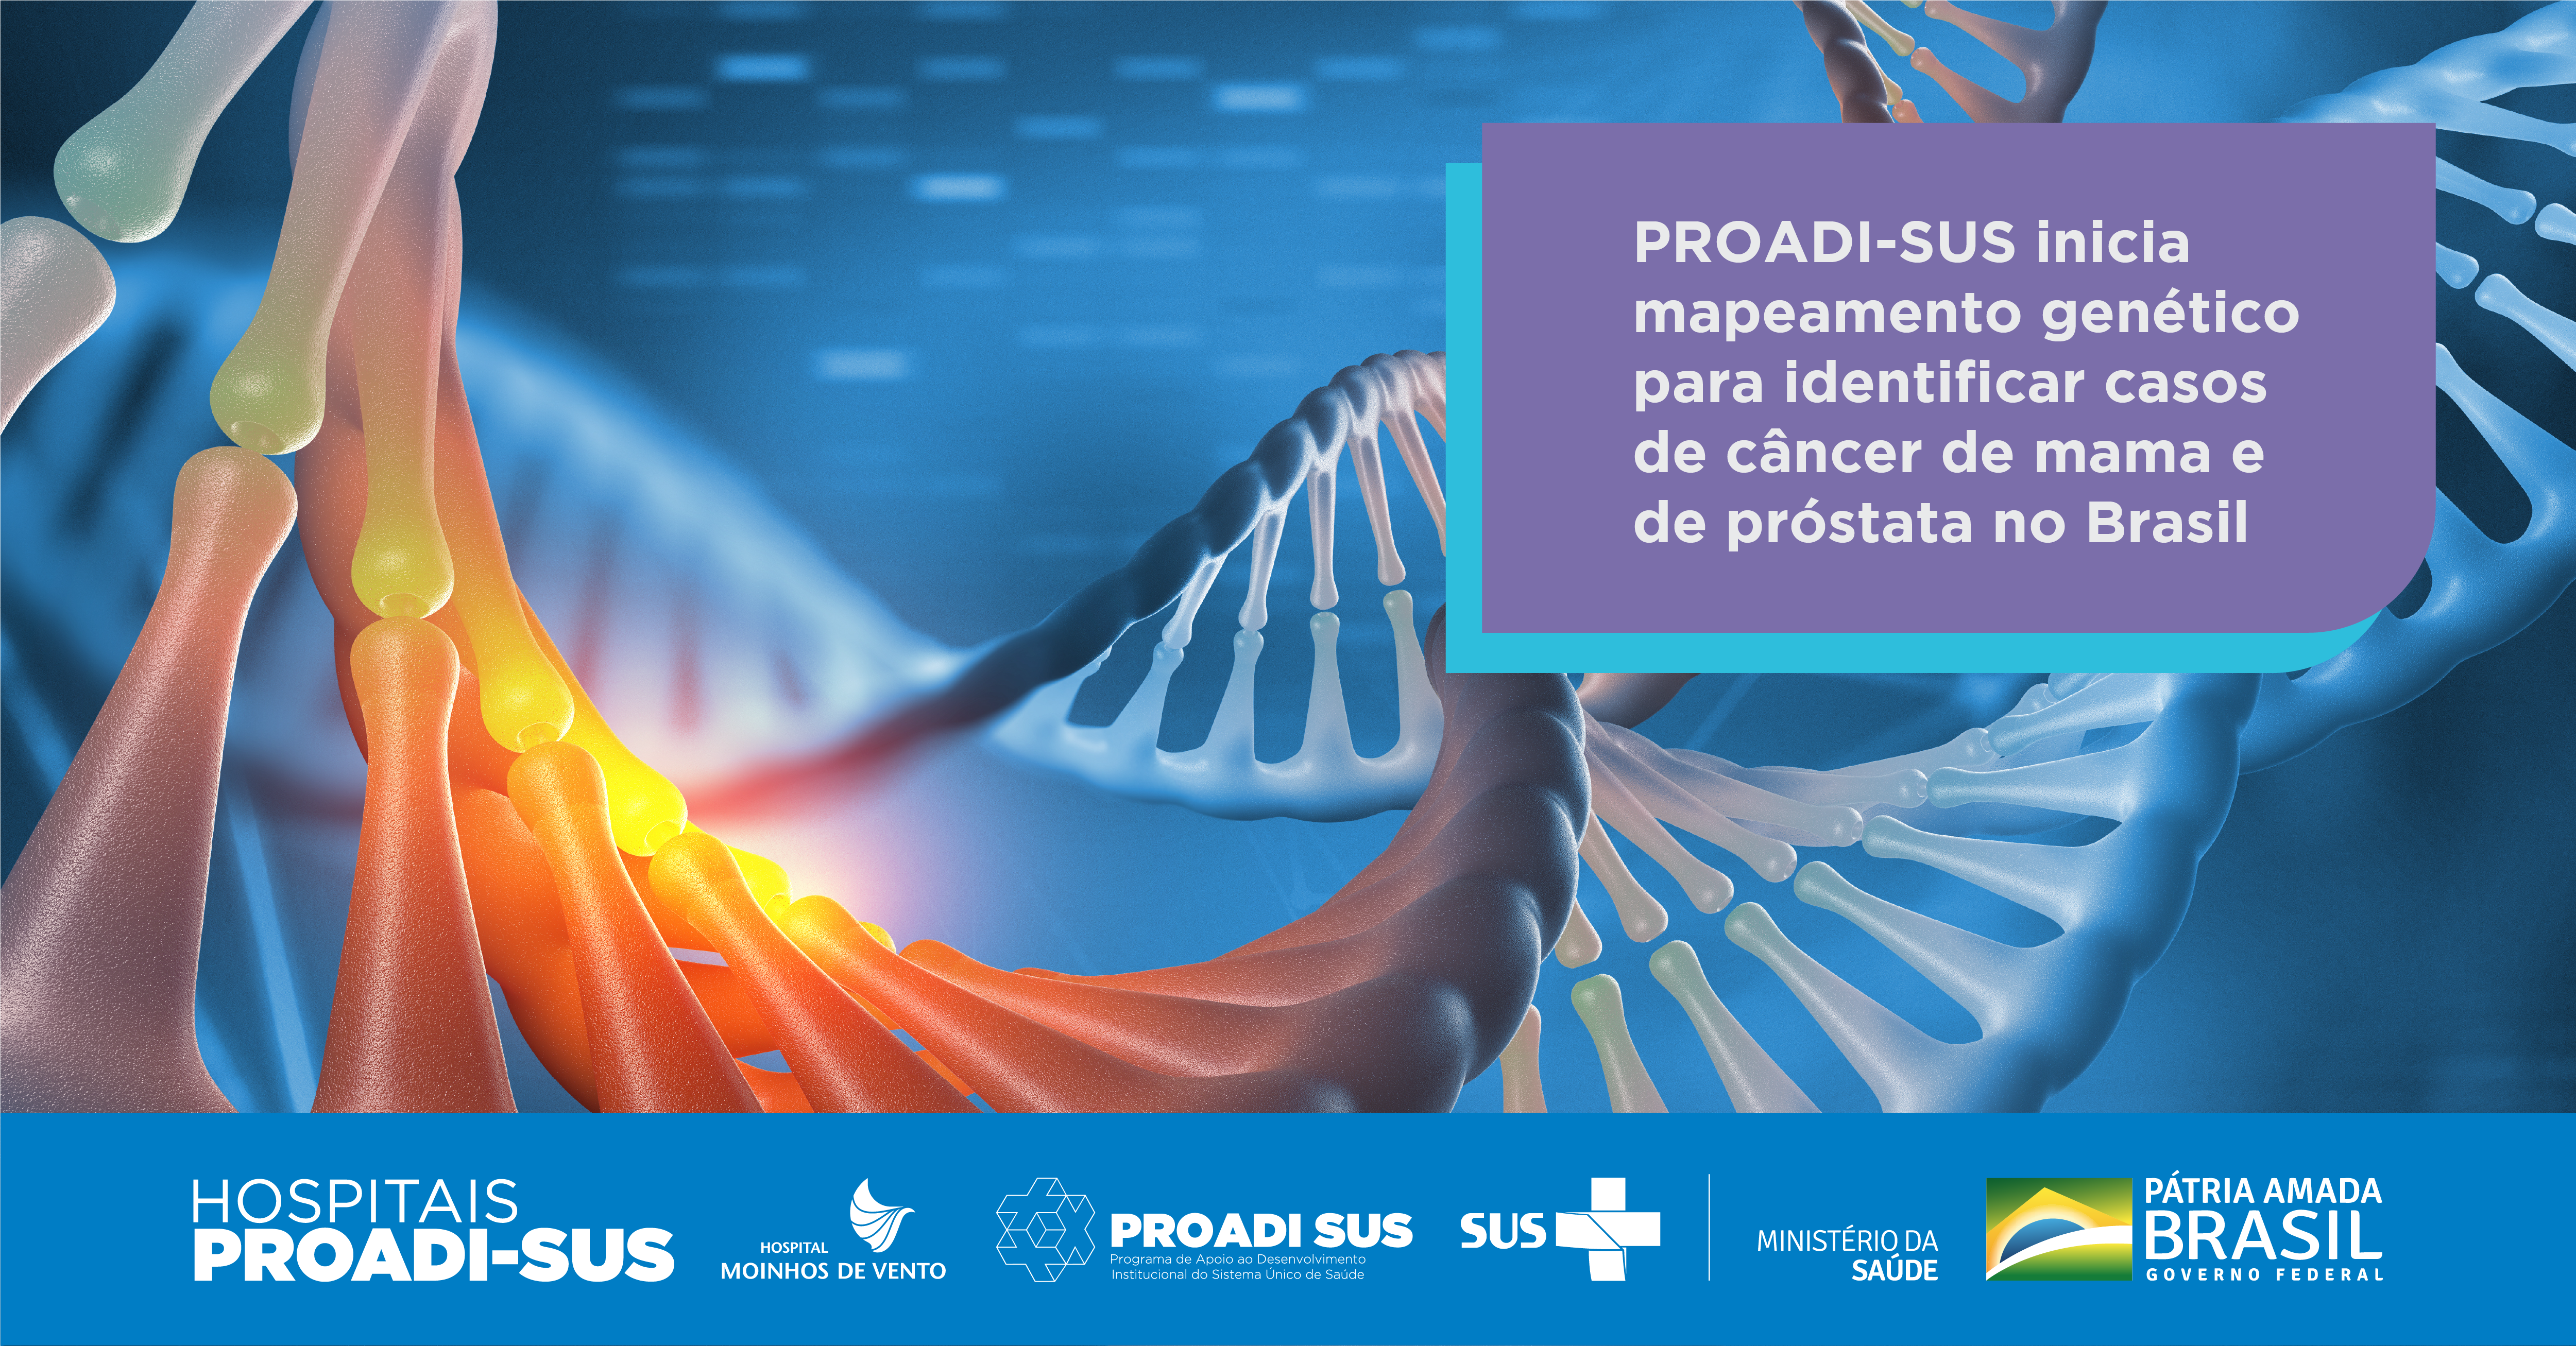 Hospital Moinhos de Vento, por meio do PROADI-SUS,  inicia mapeamento genético para identificar casos de câncer de mama e próstata no Brasil